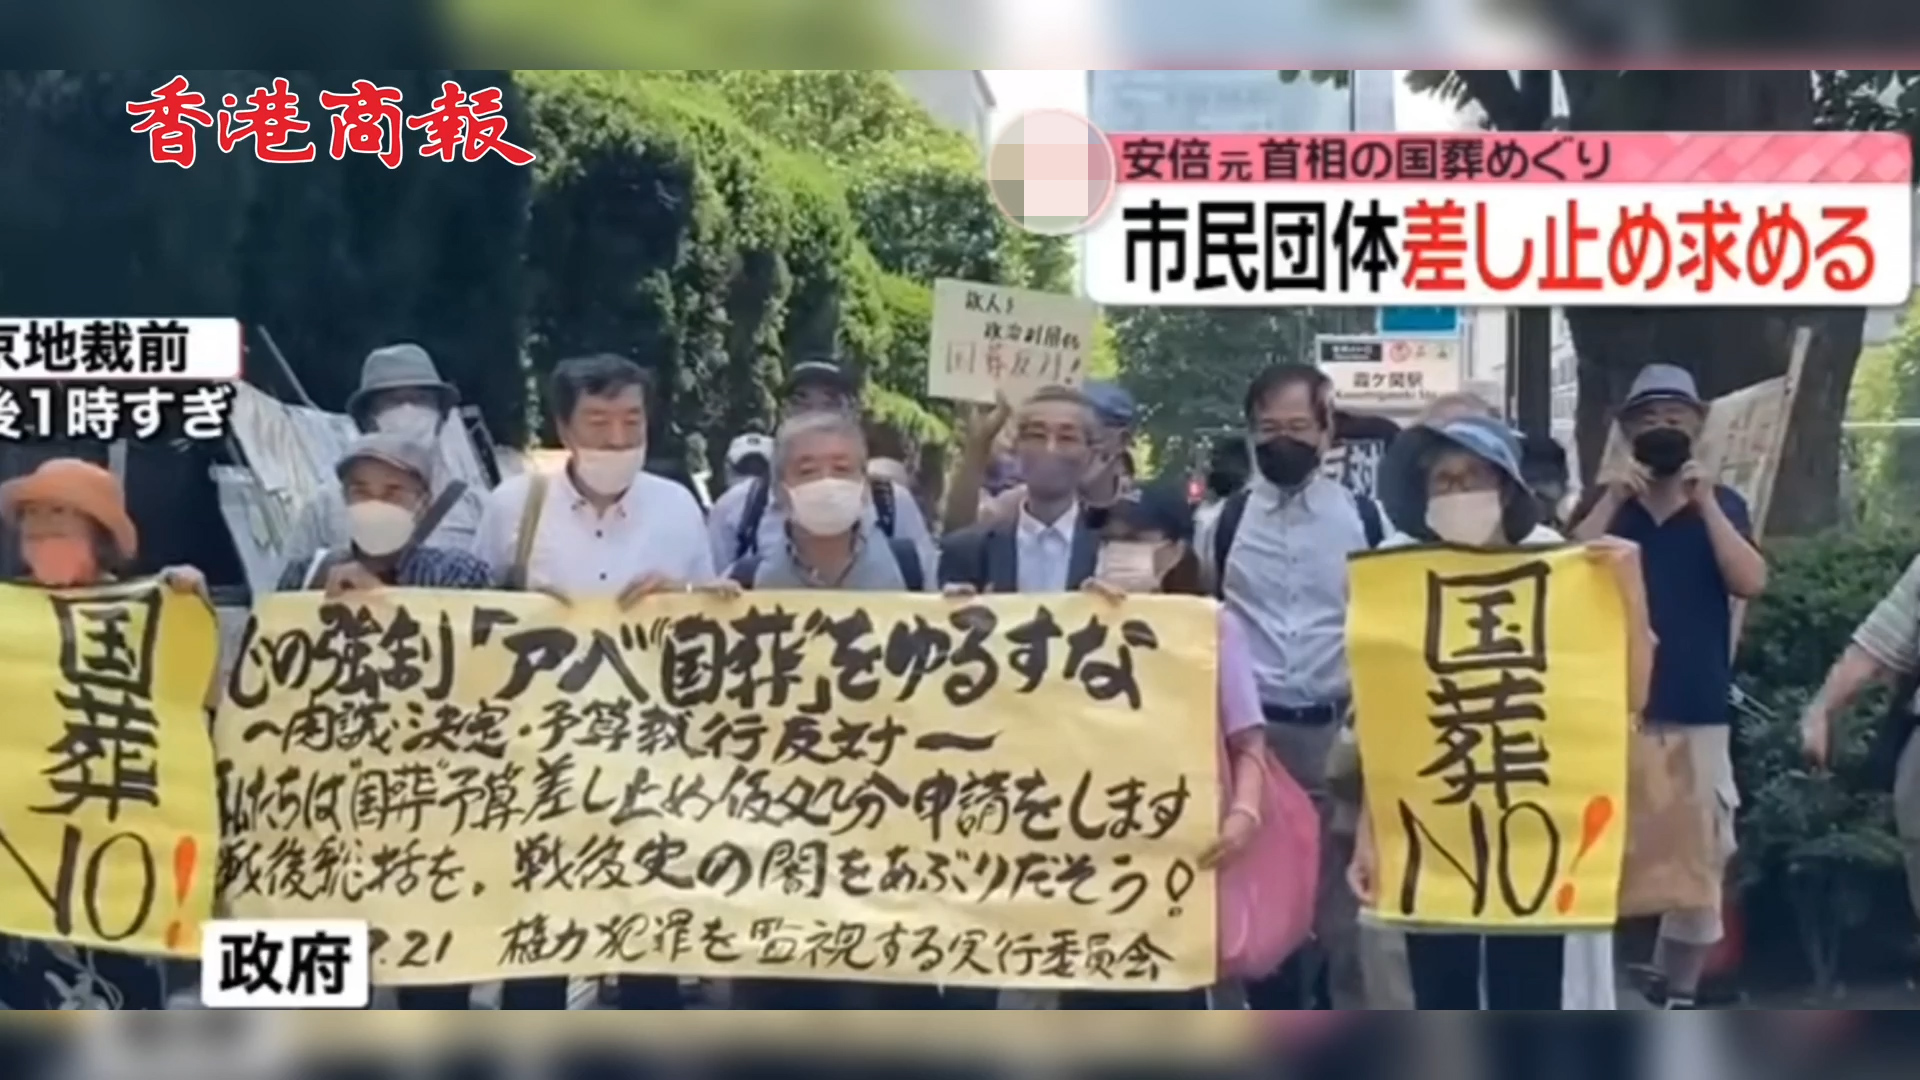 有片丨日本市民團體向法院提出申訴 要求叫停為安倍舉行「國葬」